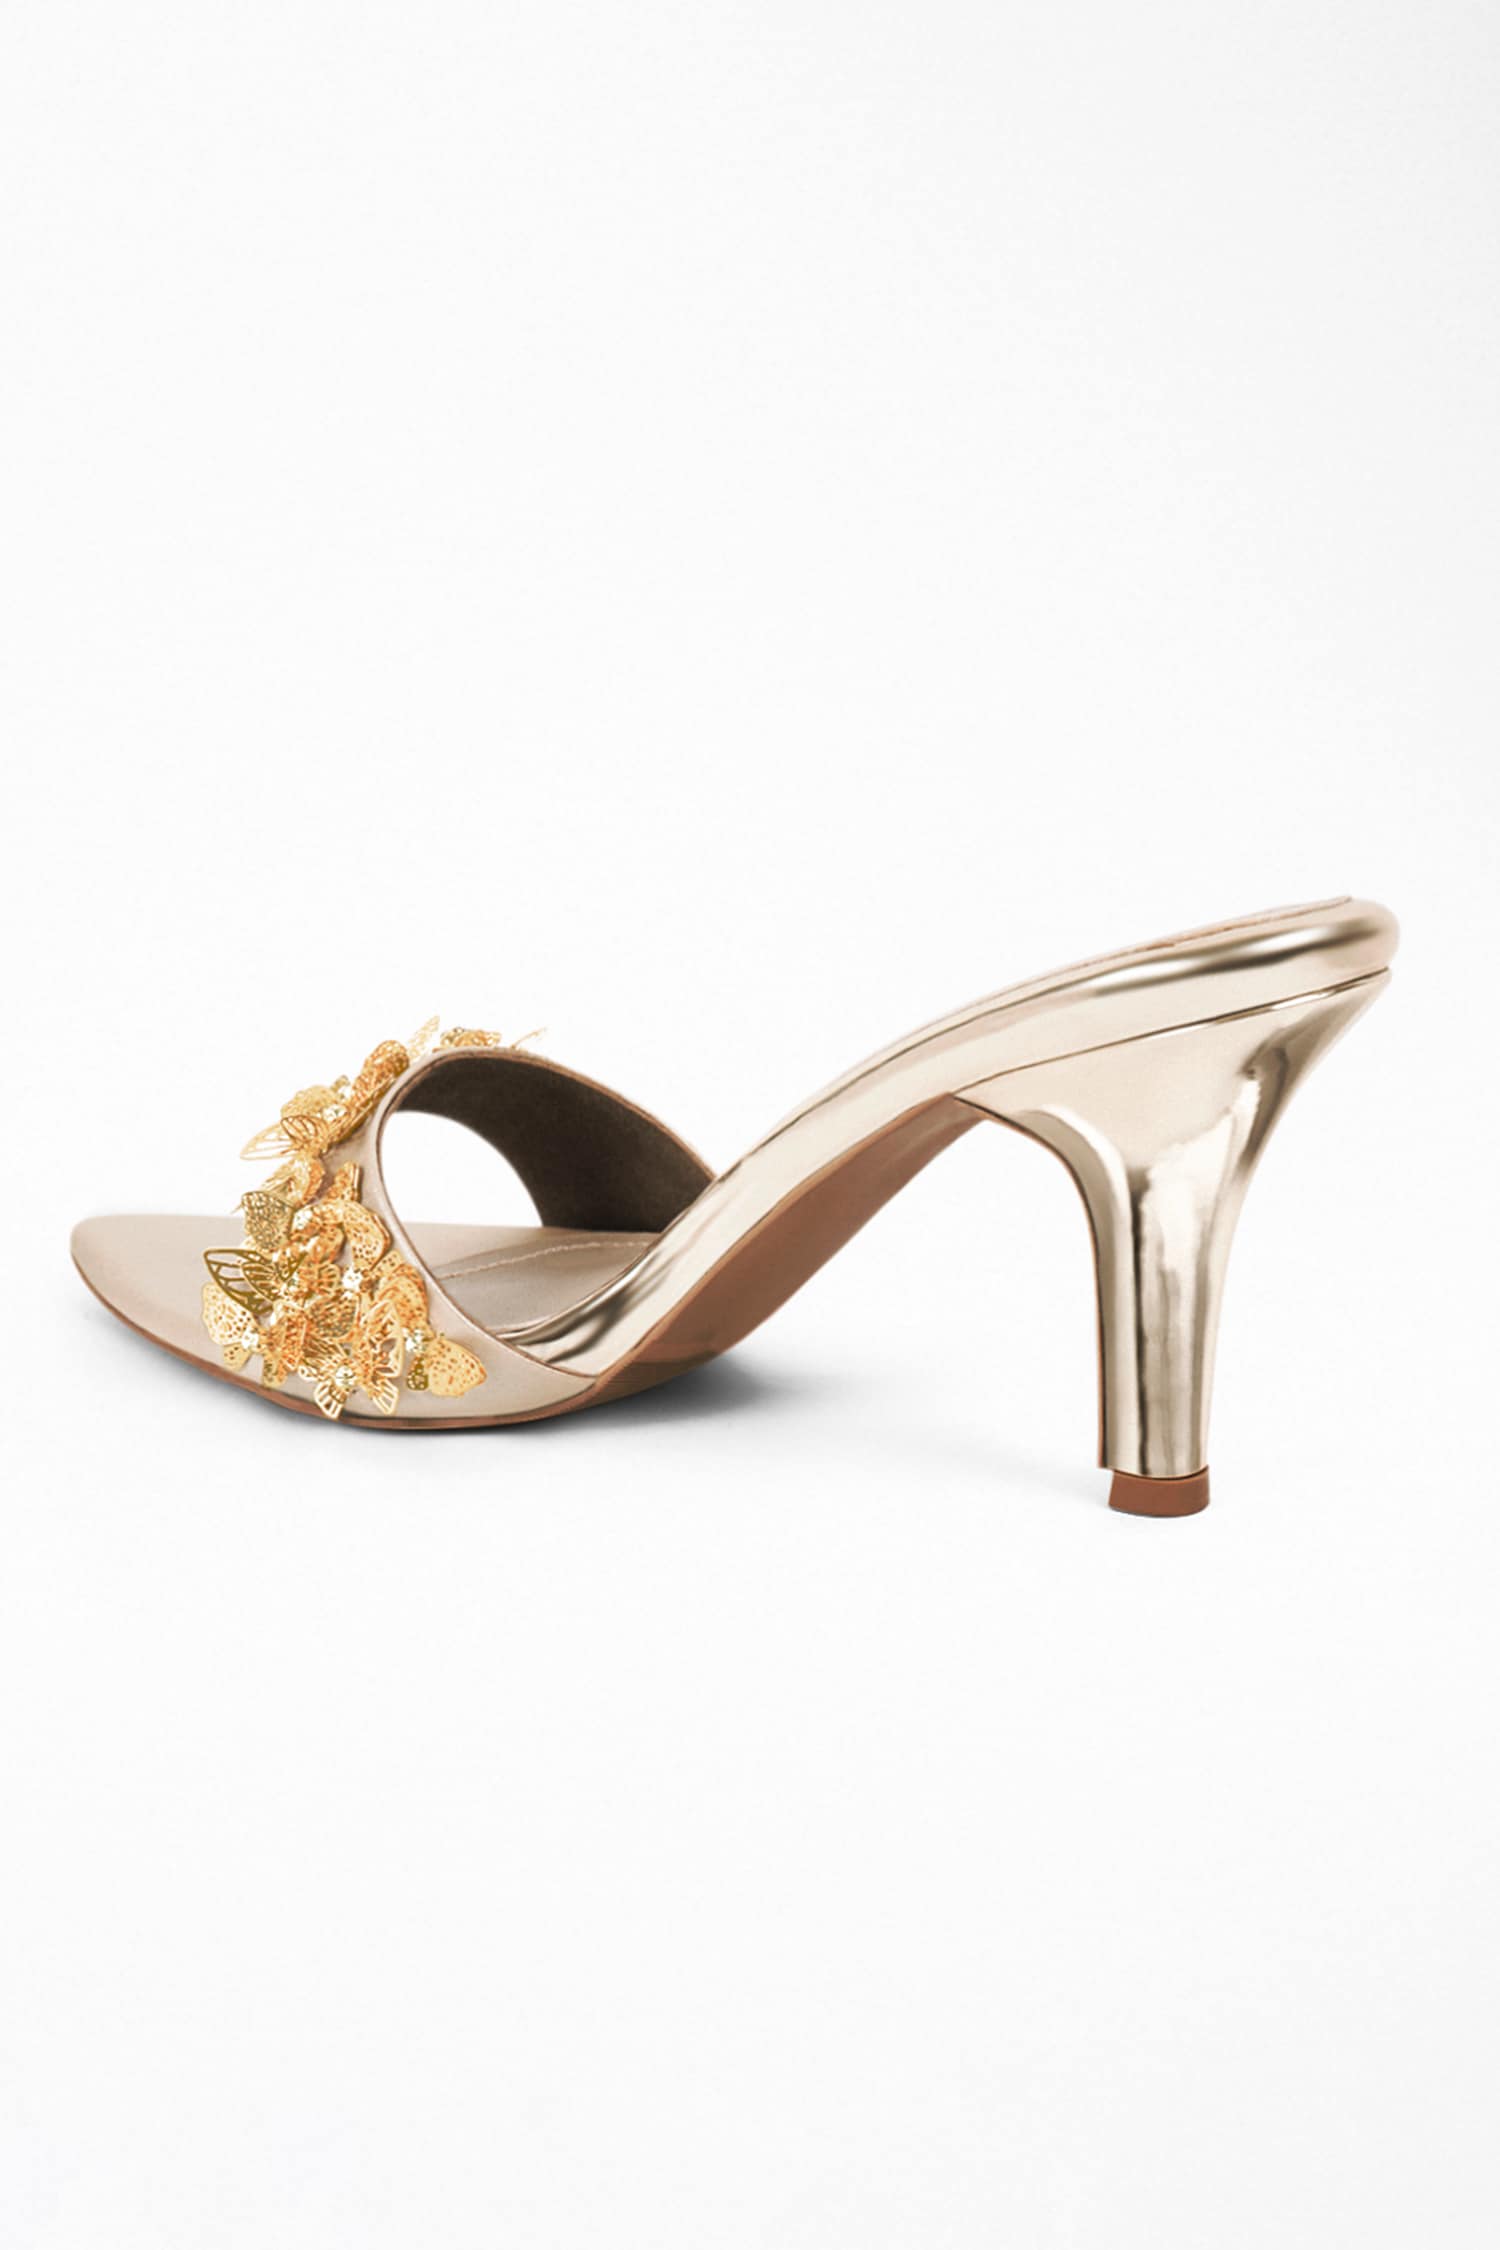 Buy Aamnu�Women Designer Block Heel Sandals with Butterfly Design at  Amazon.in